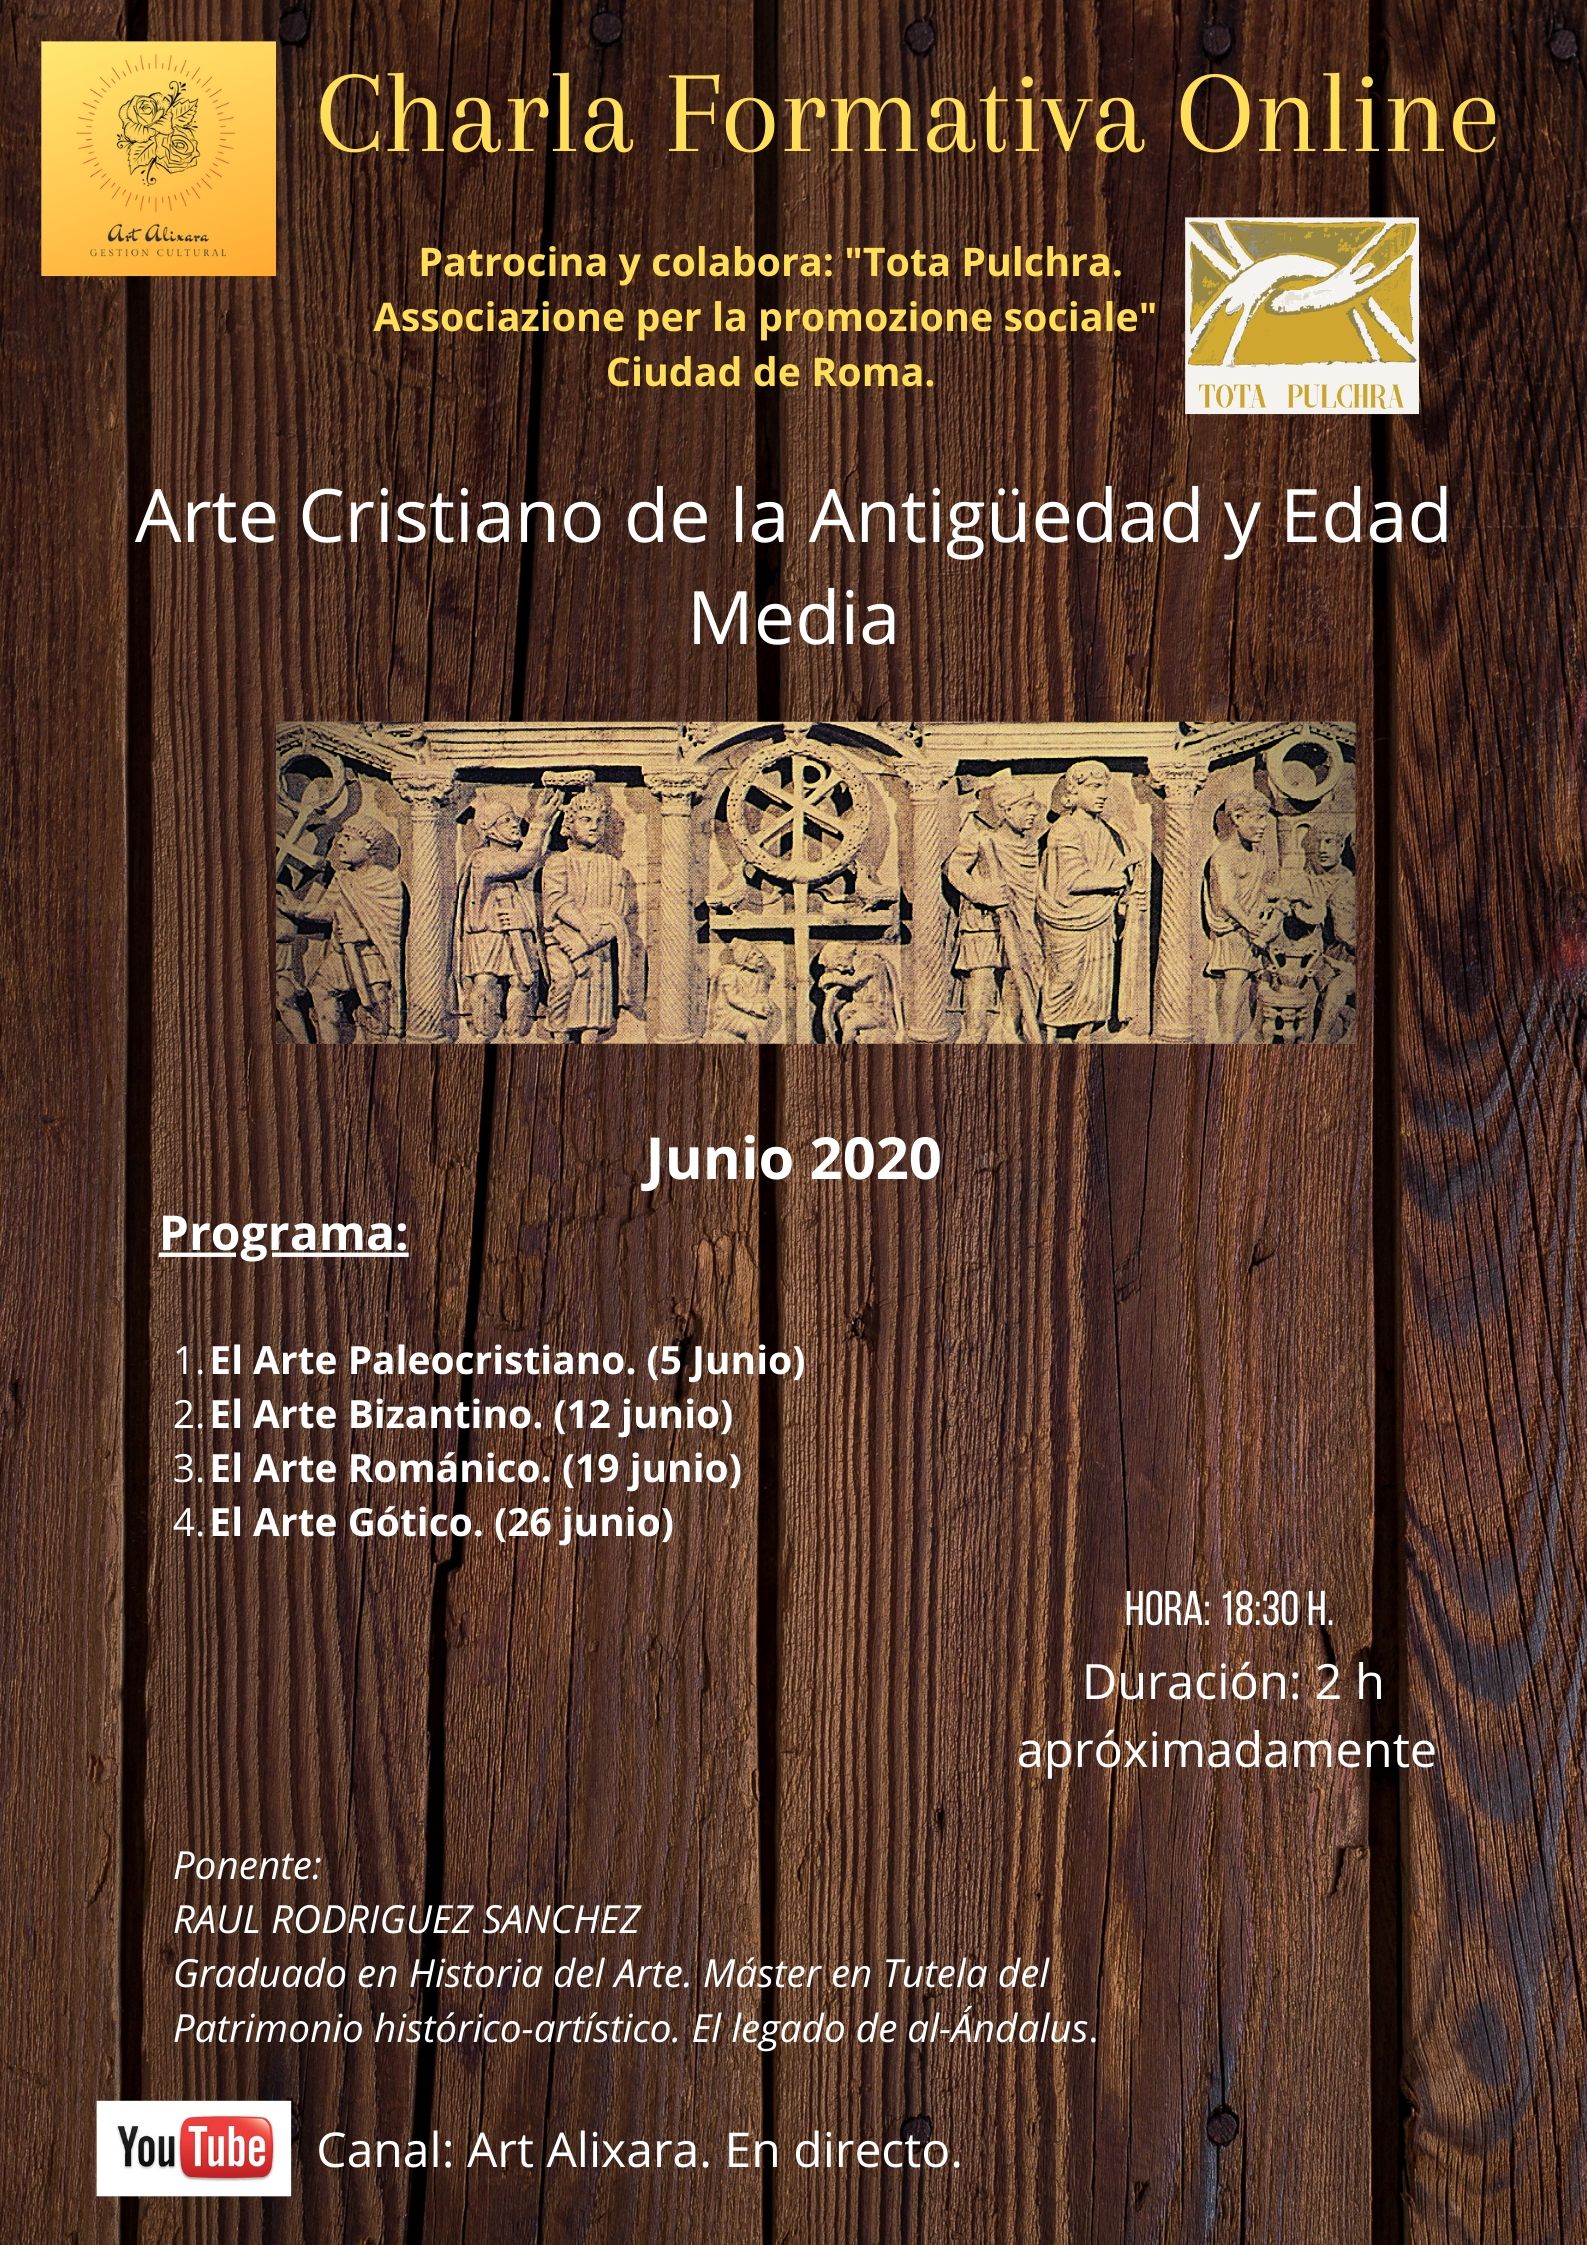 Charla Formativa “Arte Cristiano de la Antigüedad y Edad Media”